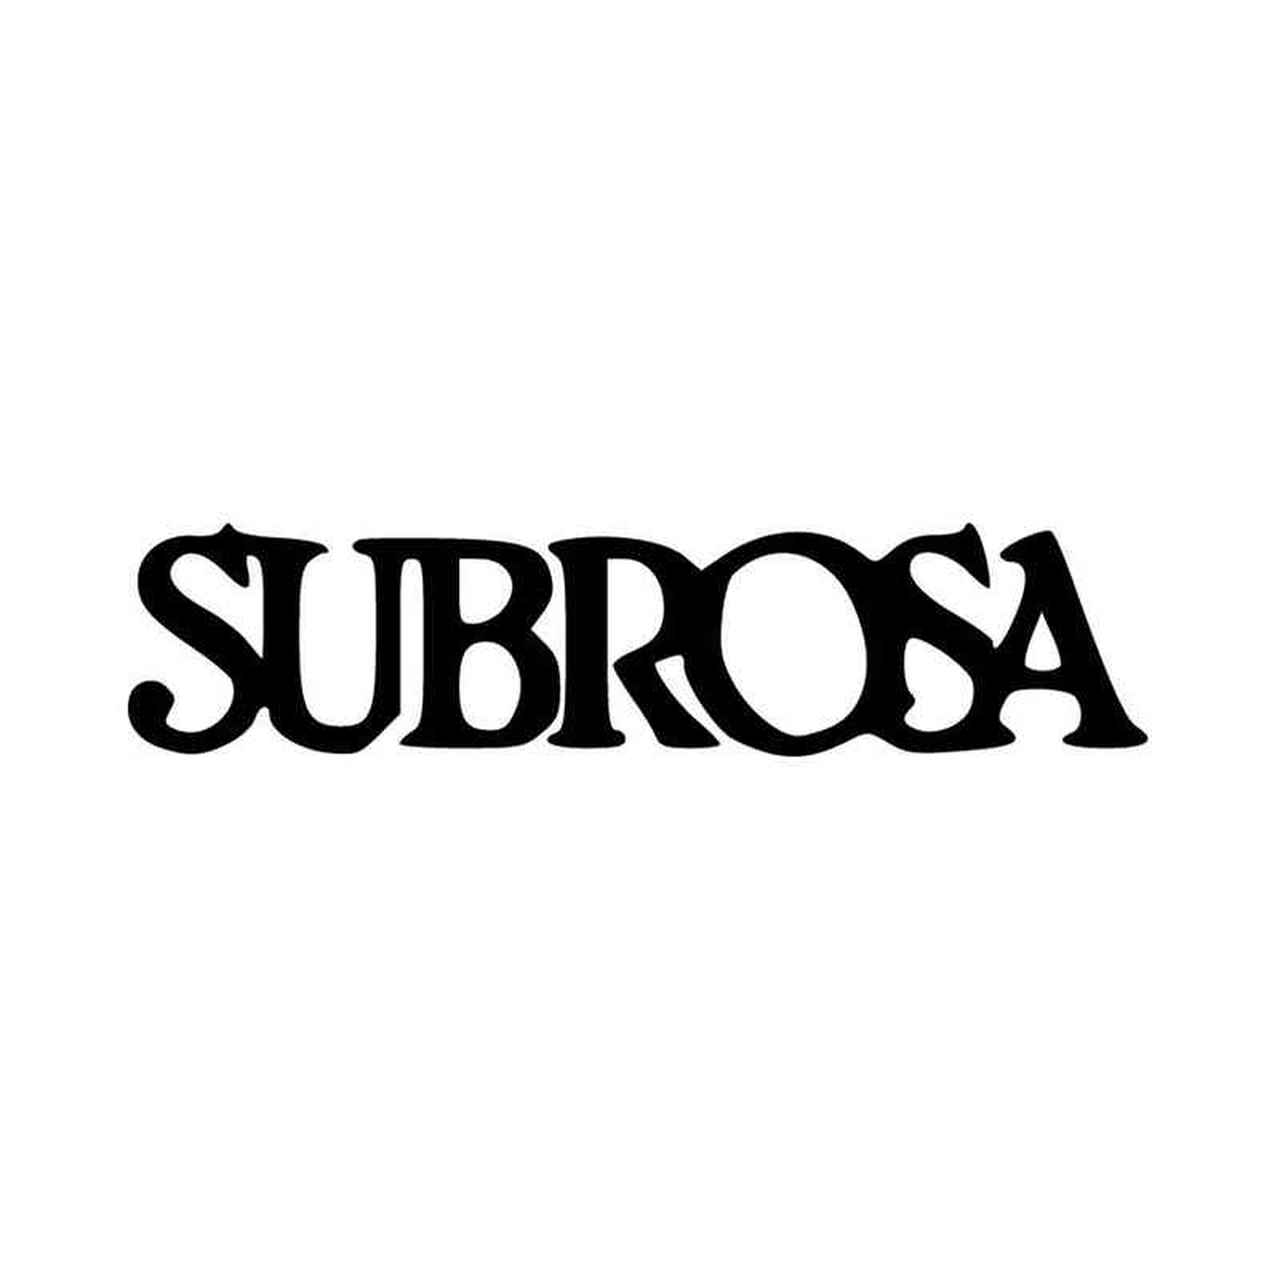 Subrosa Logo - Subrosa Logo Vinyl Decal Sticker